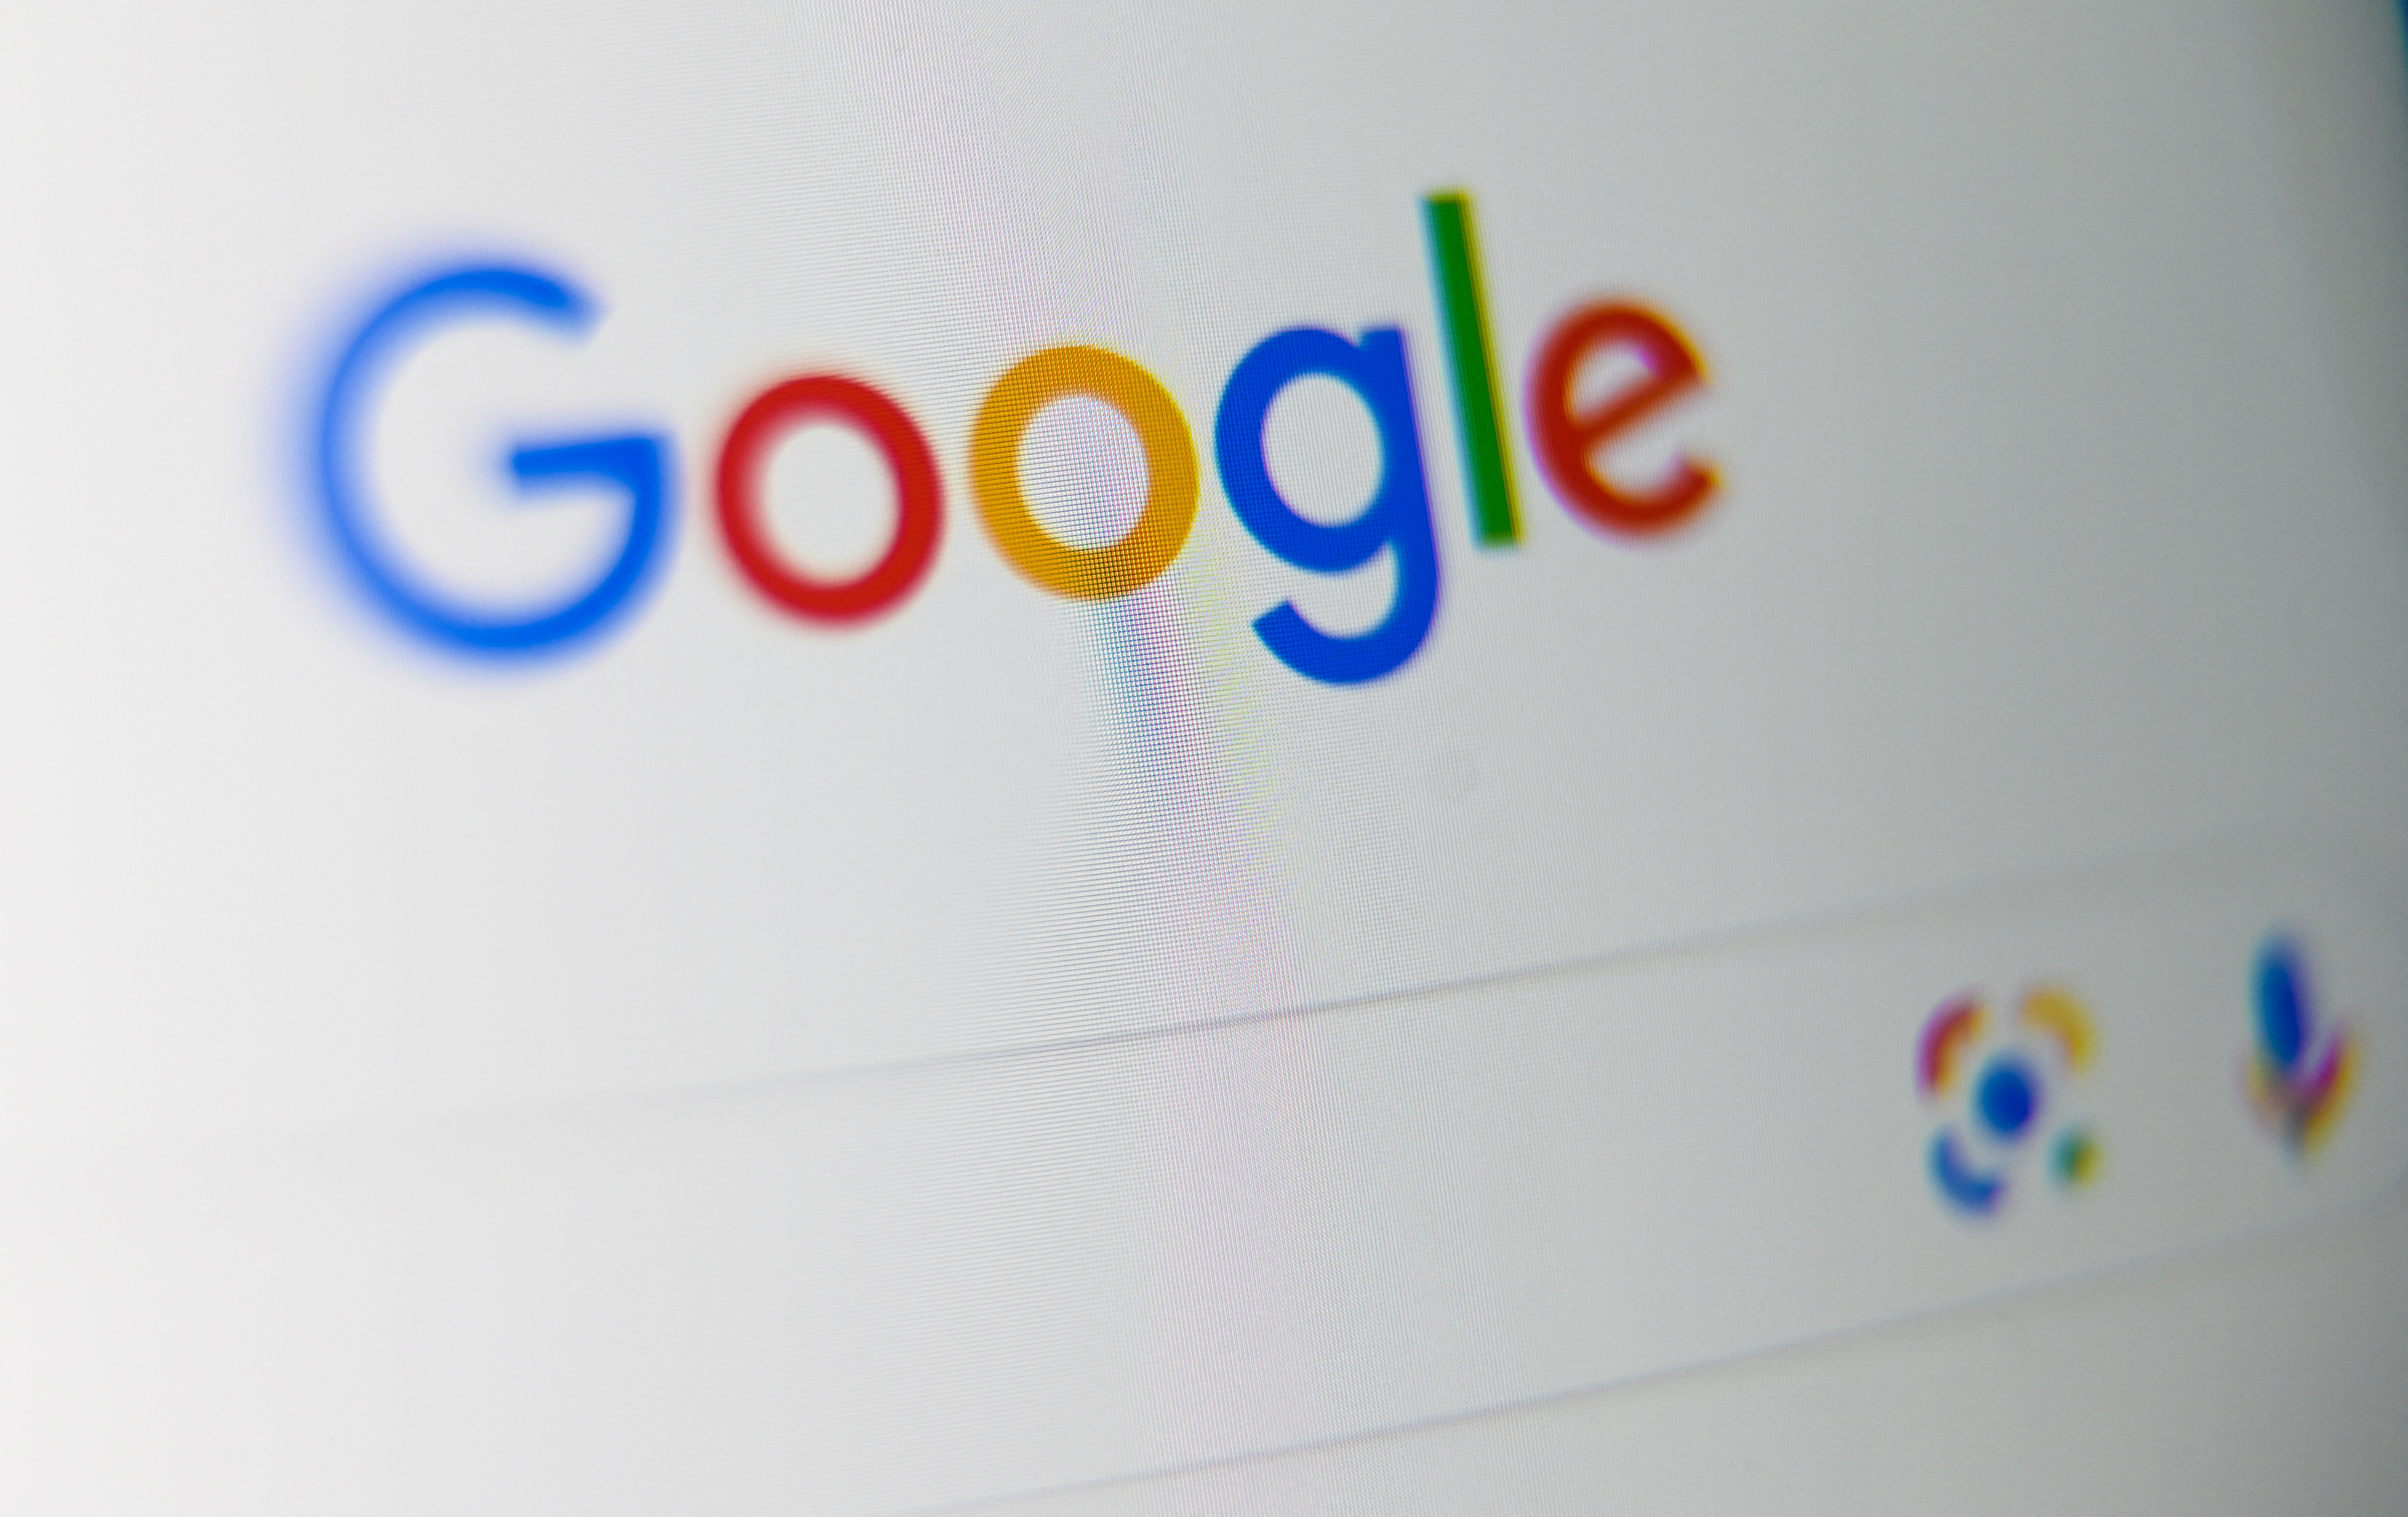 Gigaprofitot hozott a Google-nak a járvány